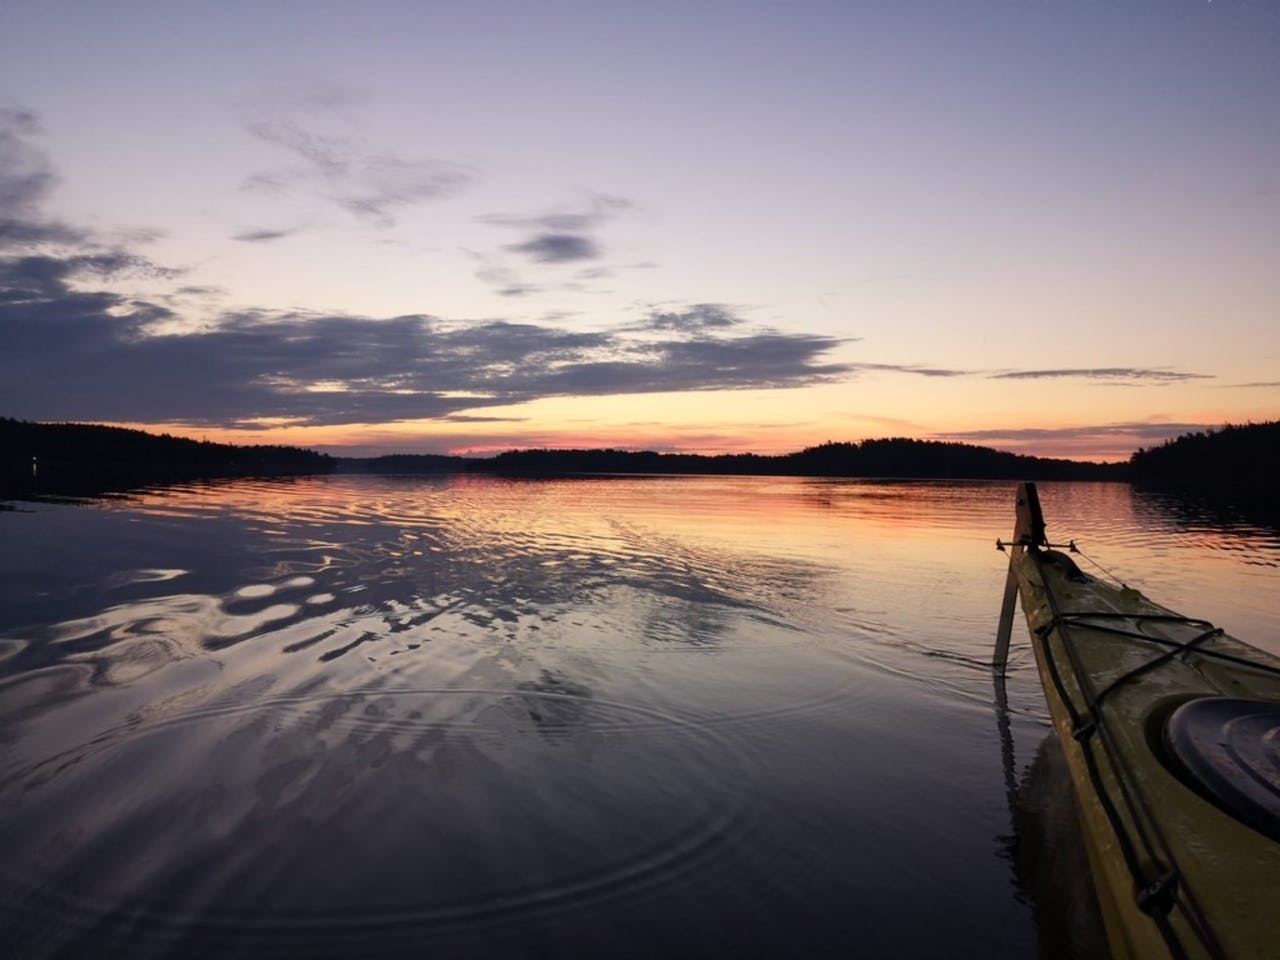 Magiczne spływy kajakowe o zachodzie słońca w Archipelagu Sztokholmskim